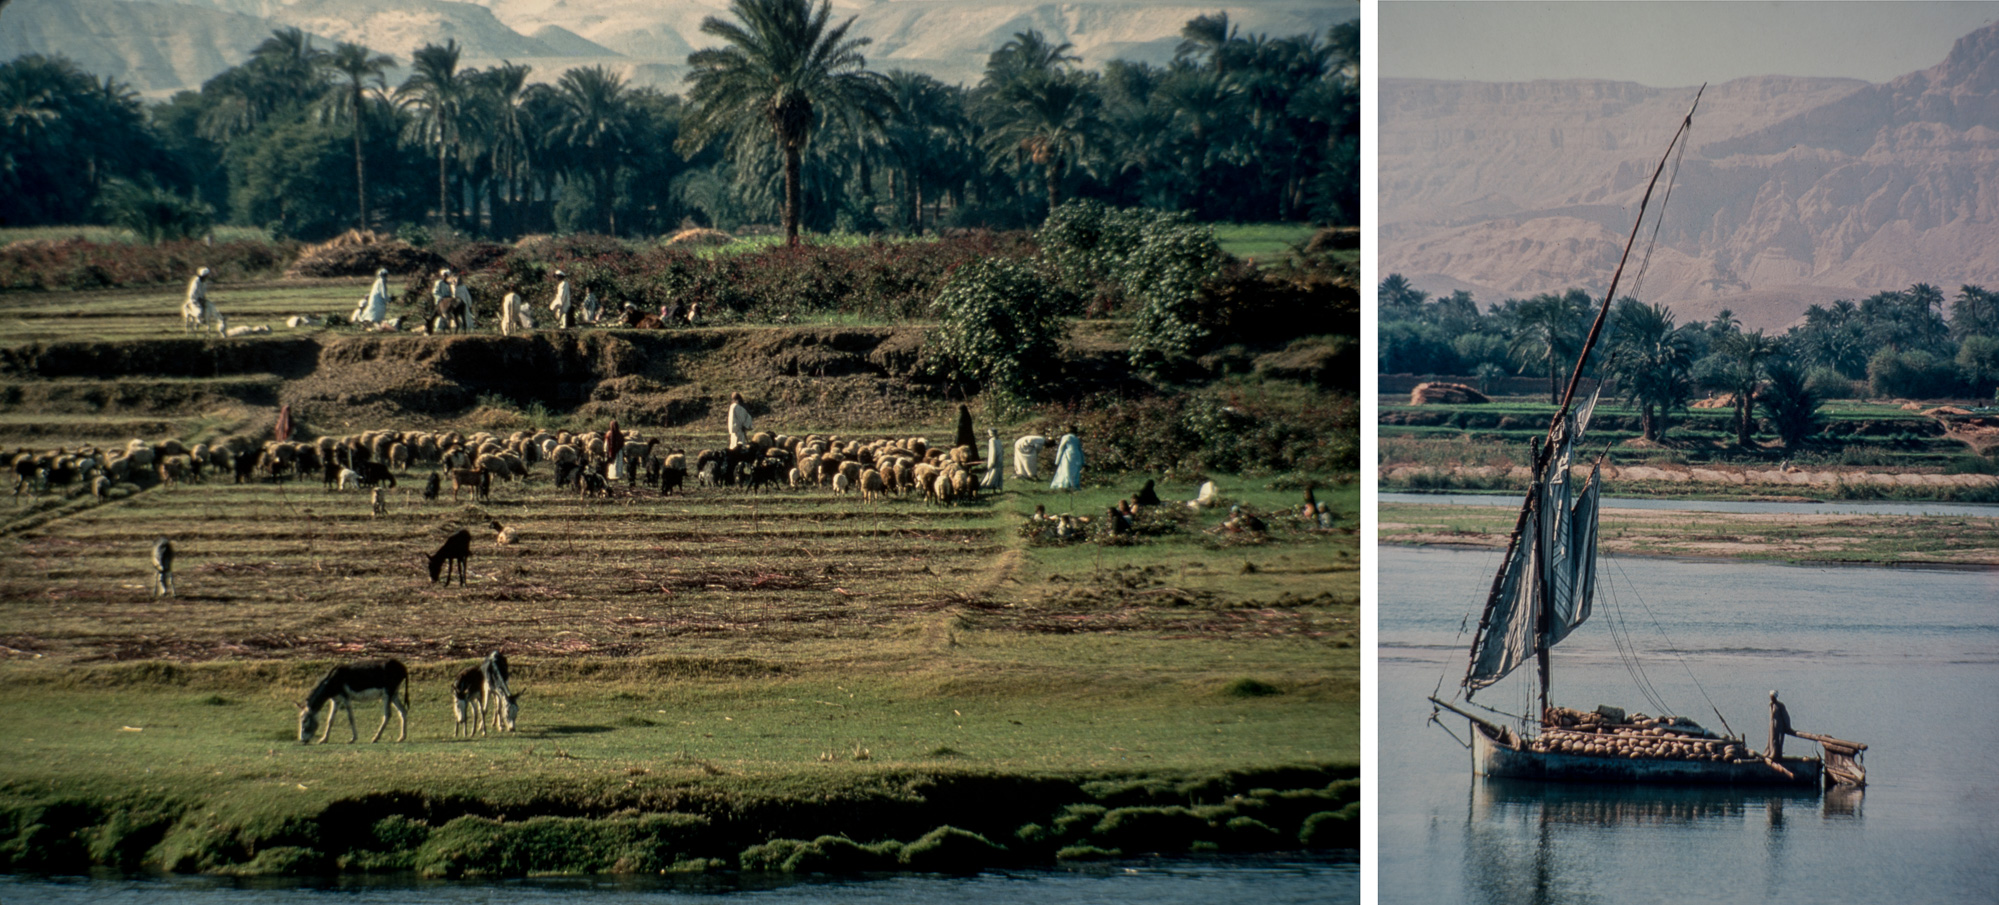 Les berges du Nil n'ont guère changé depuis deux mille ans.